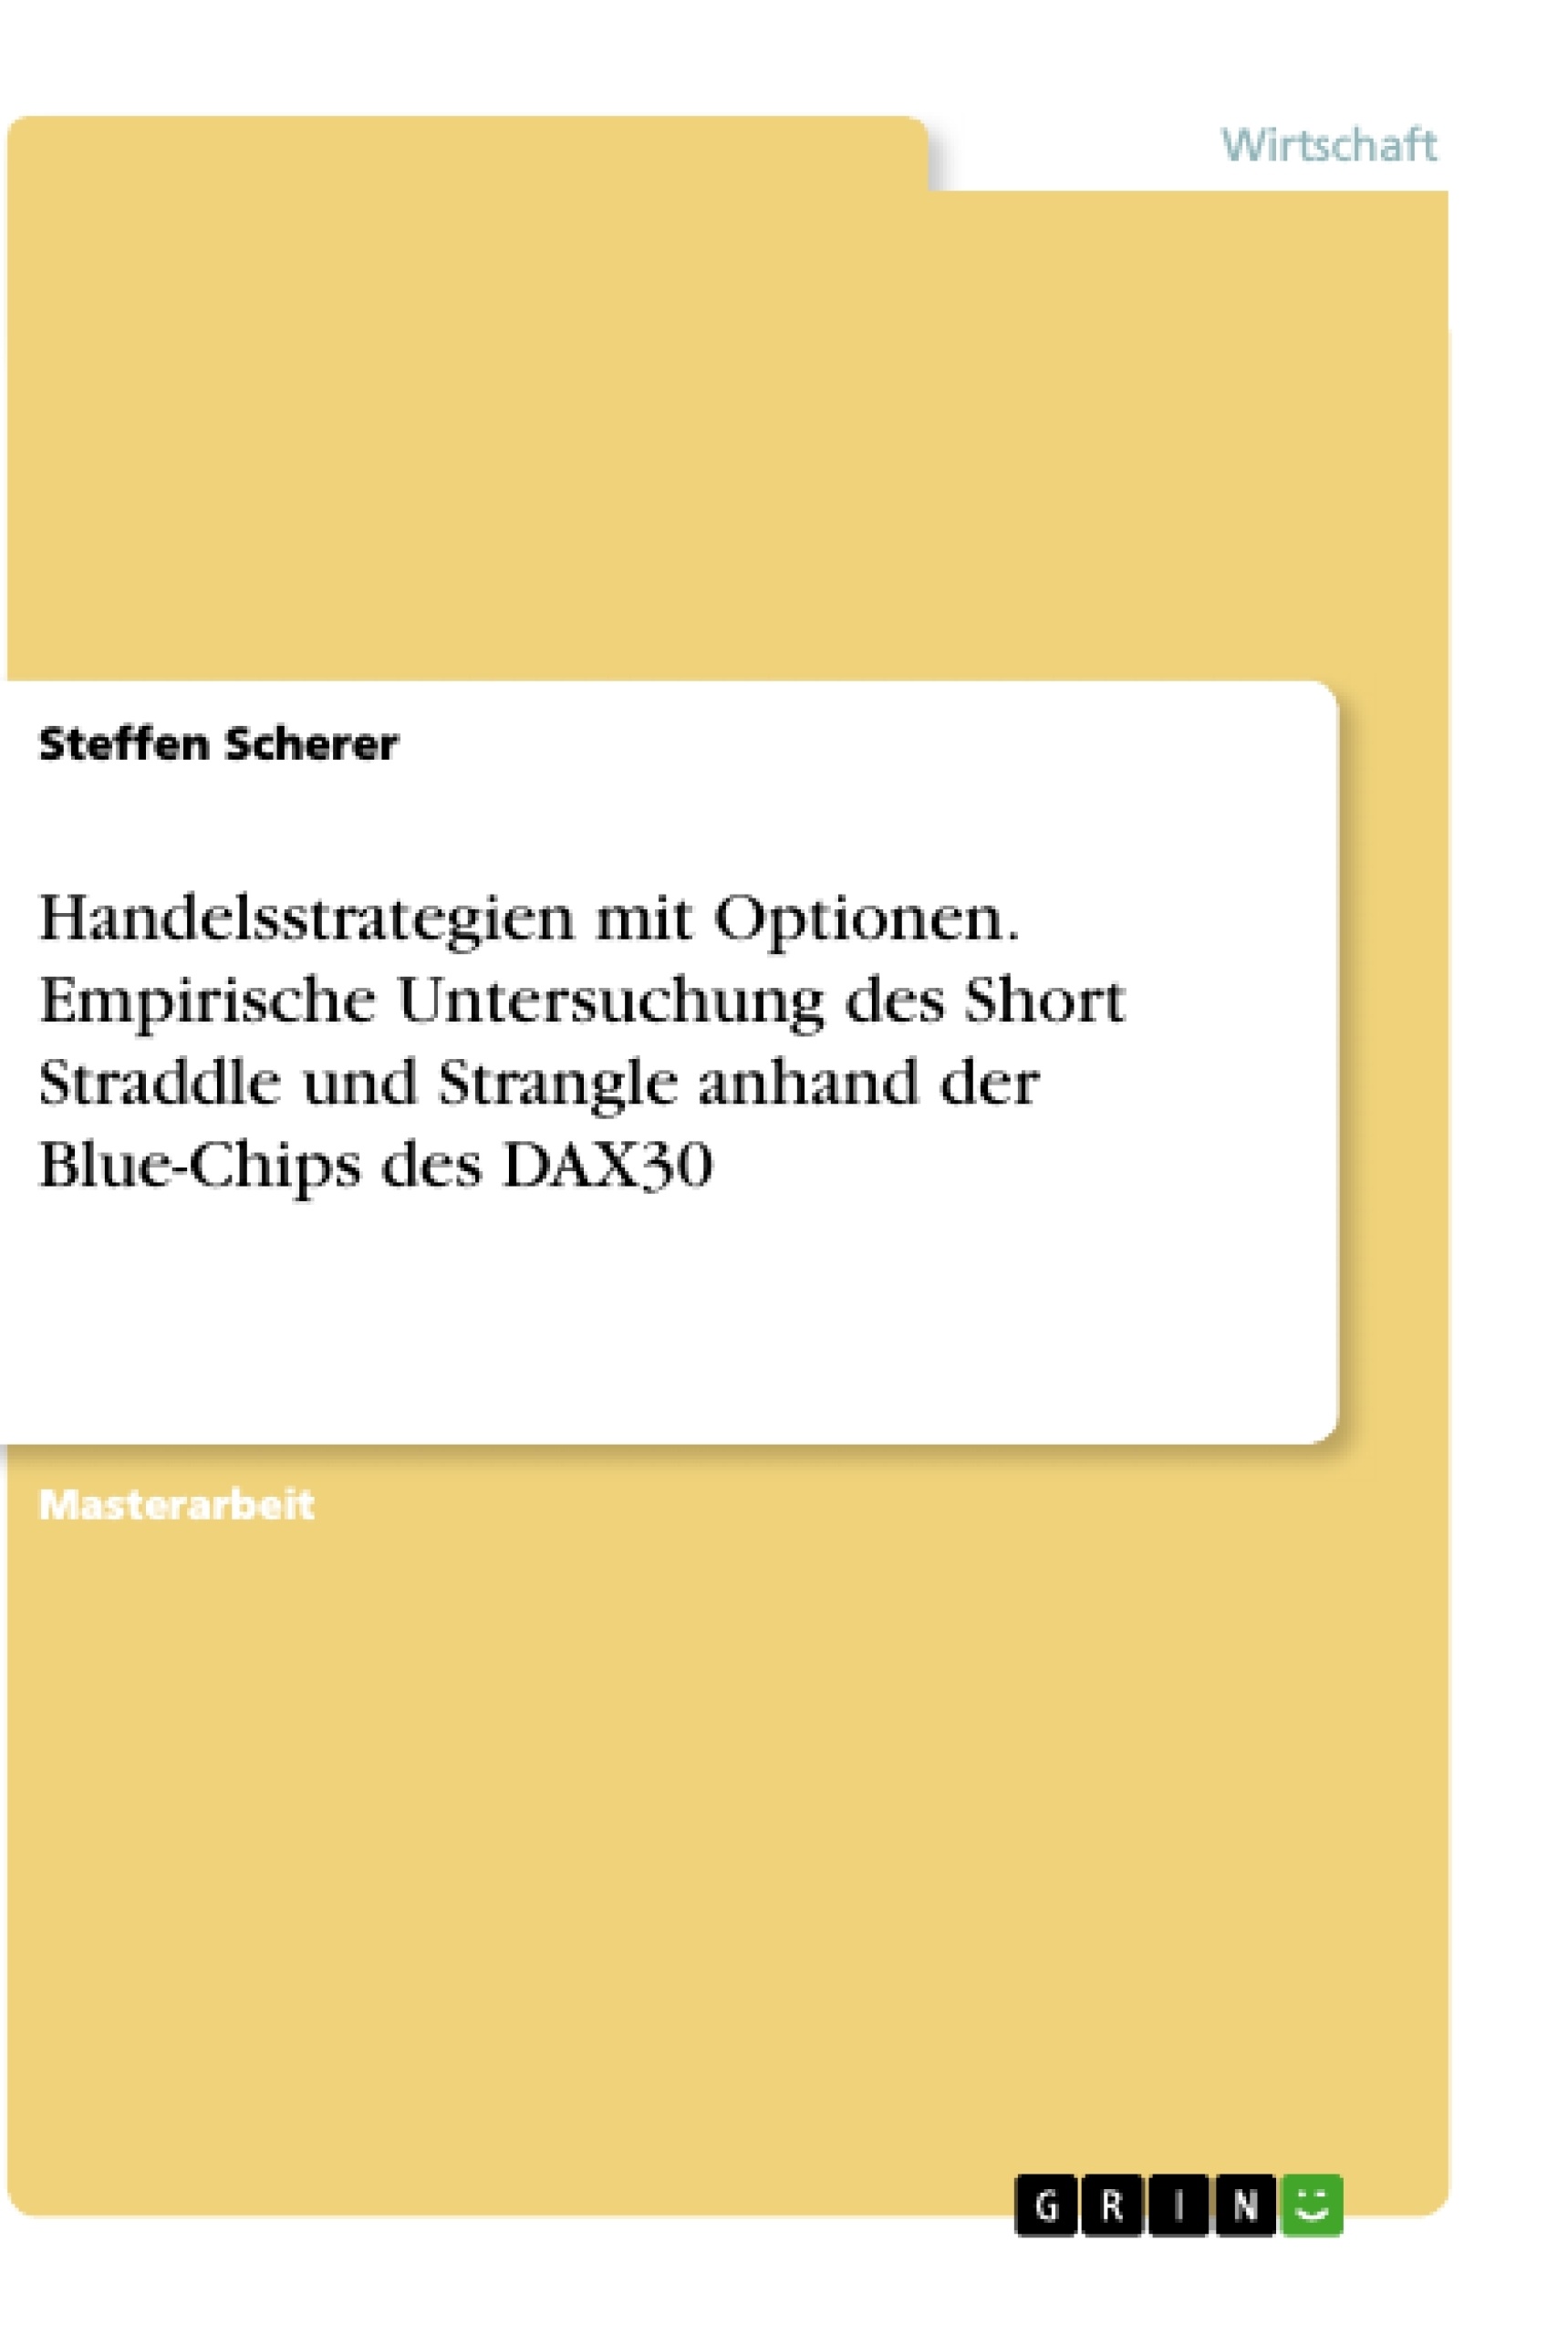 Title: Handelsstrategien mit Optionen. Empirische Untersuchung des Short Straddle und Strangle anhand der Blue-Chips des DAX30